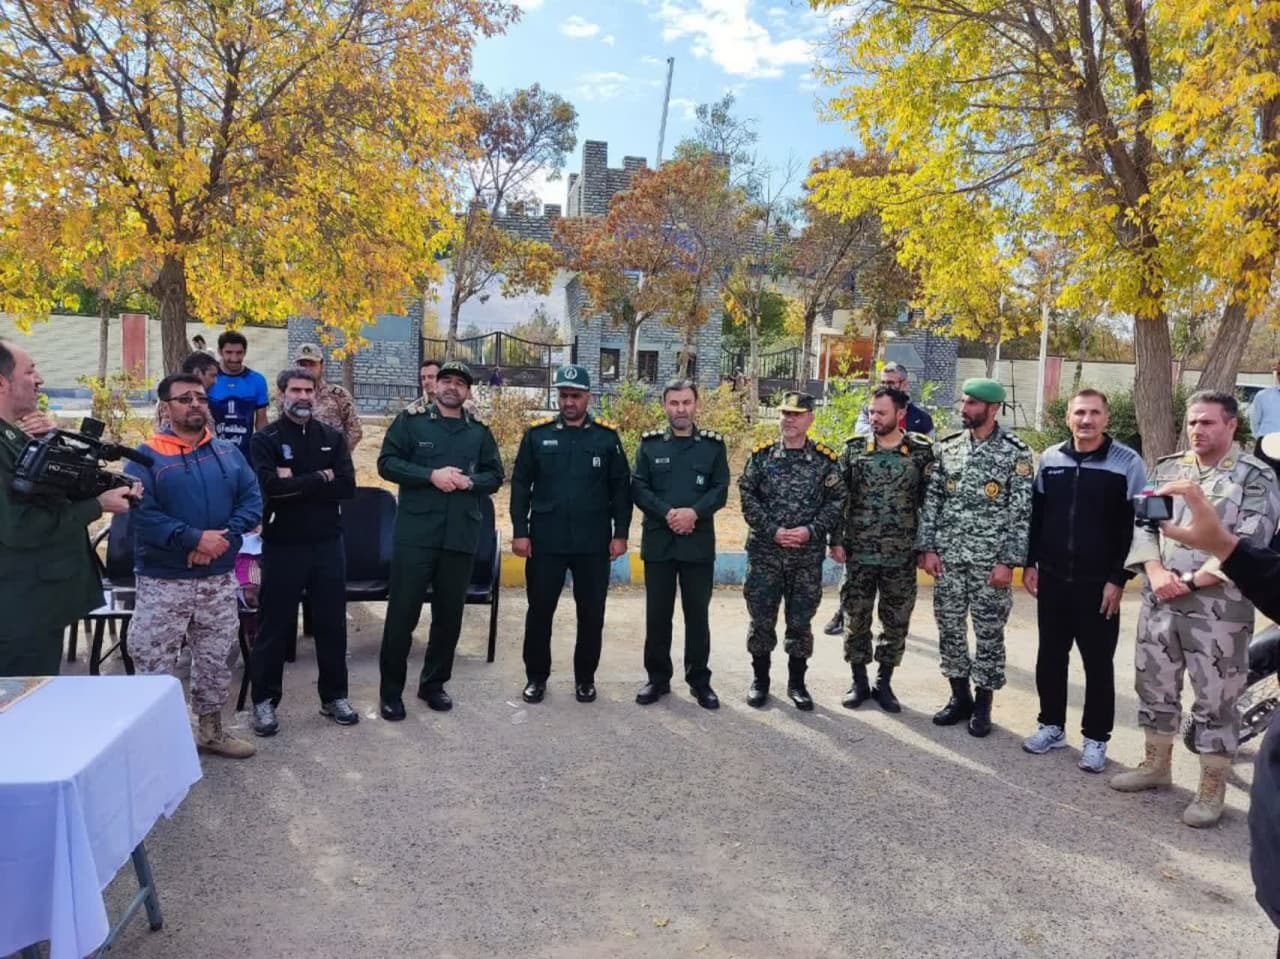 مسابقات دو میدانی ماده ۸۰۰۰ متر استقامت نیروهای مسلح استان آذربایجان غربی